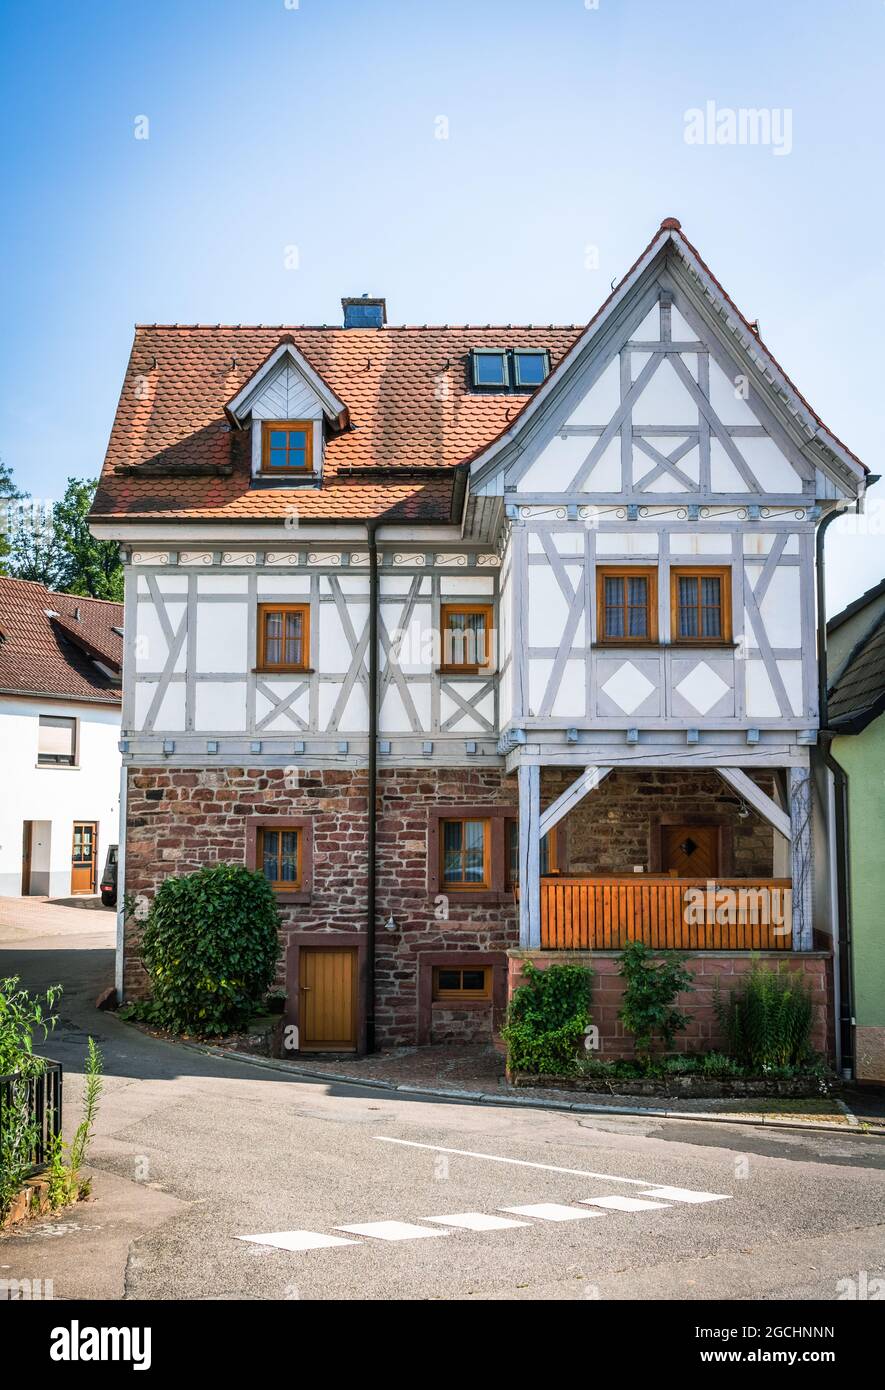 Schön renovierter Fachwerkbau typisch für die Region in einer kleinen Gemeinde in Süddeutschland Stockfoto